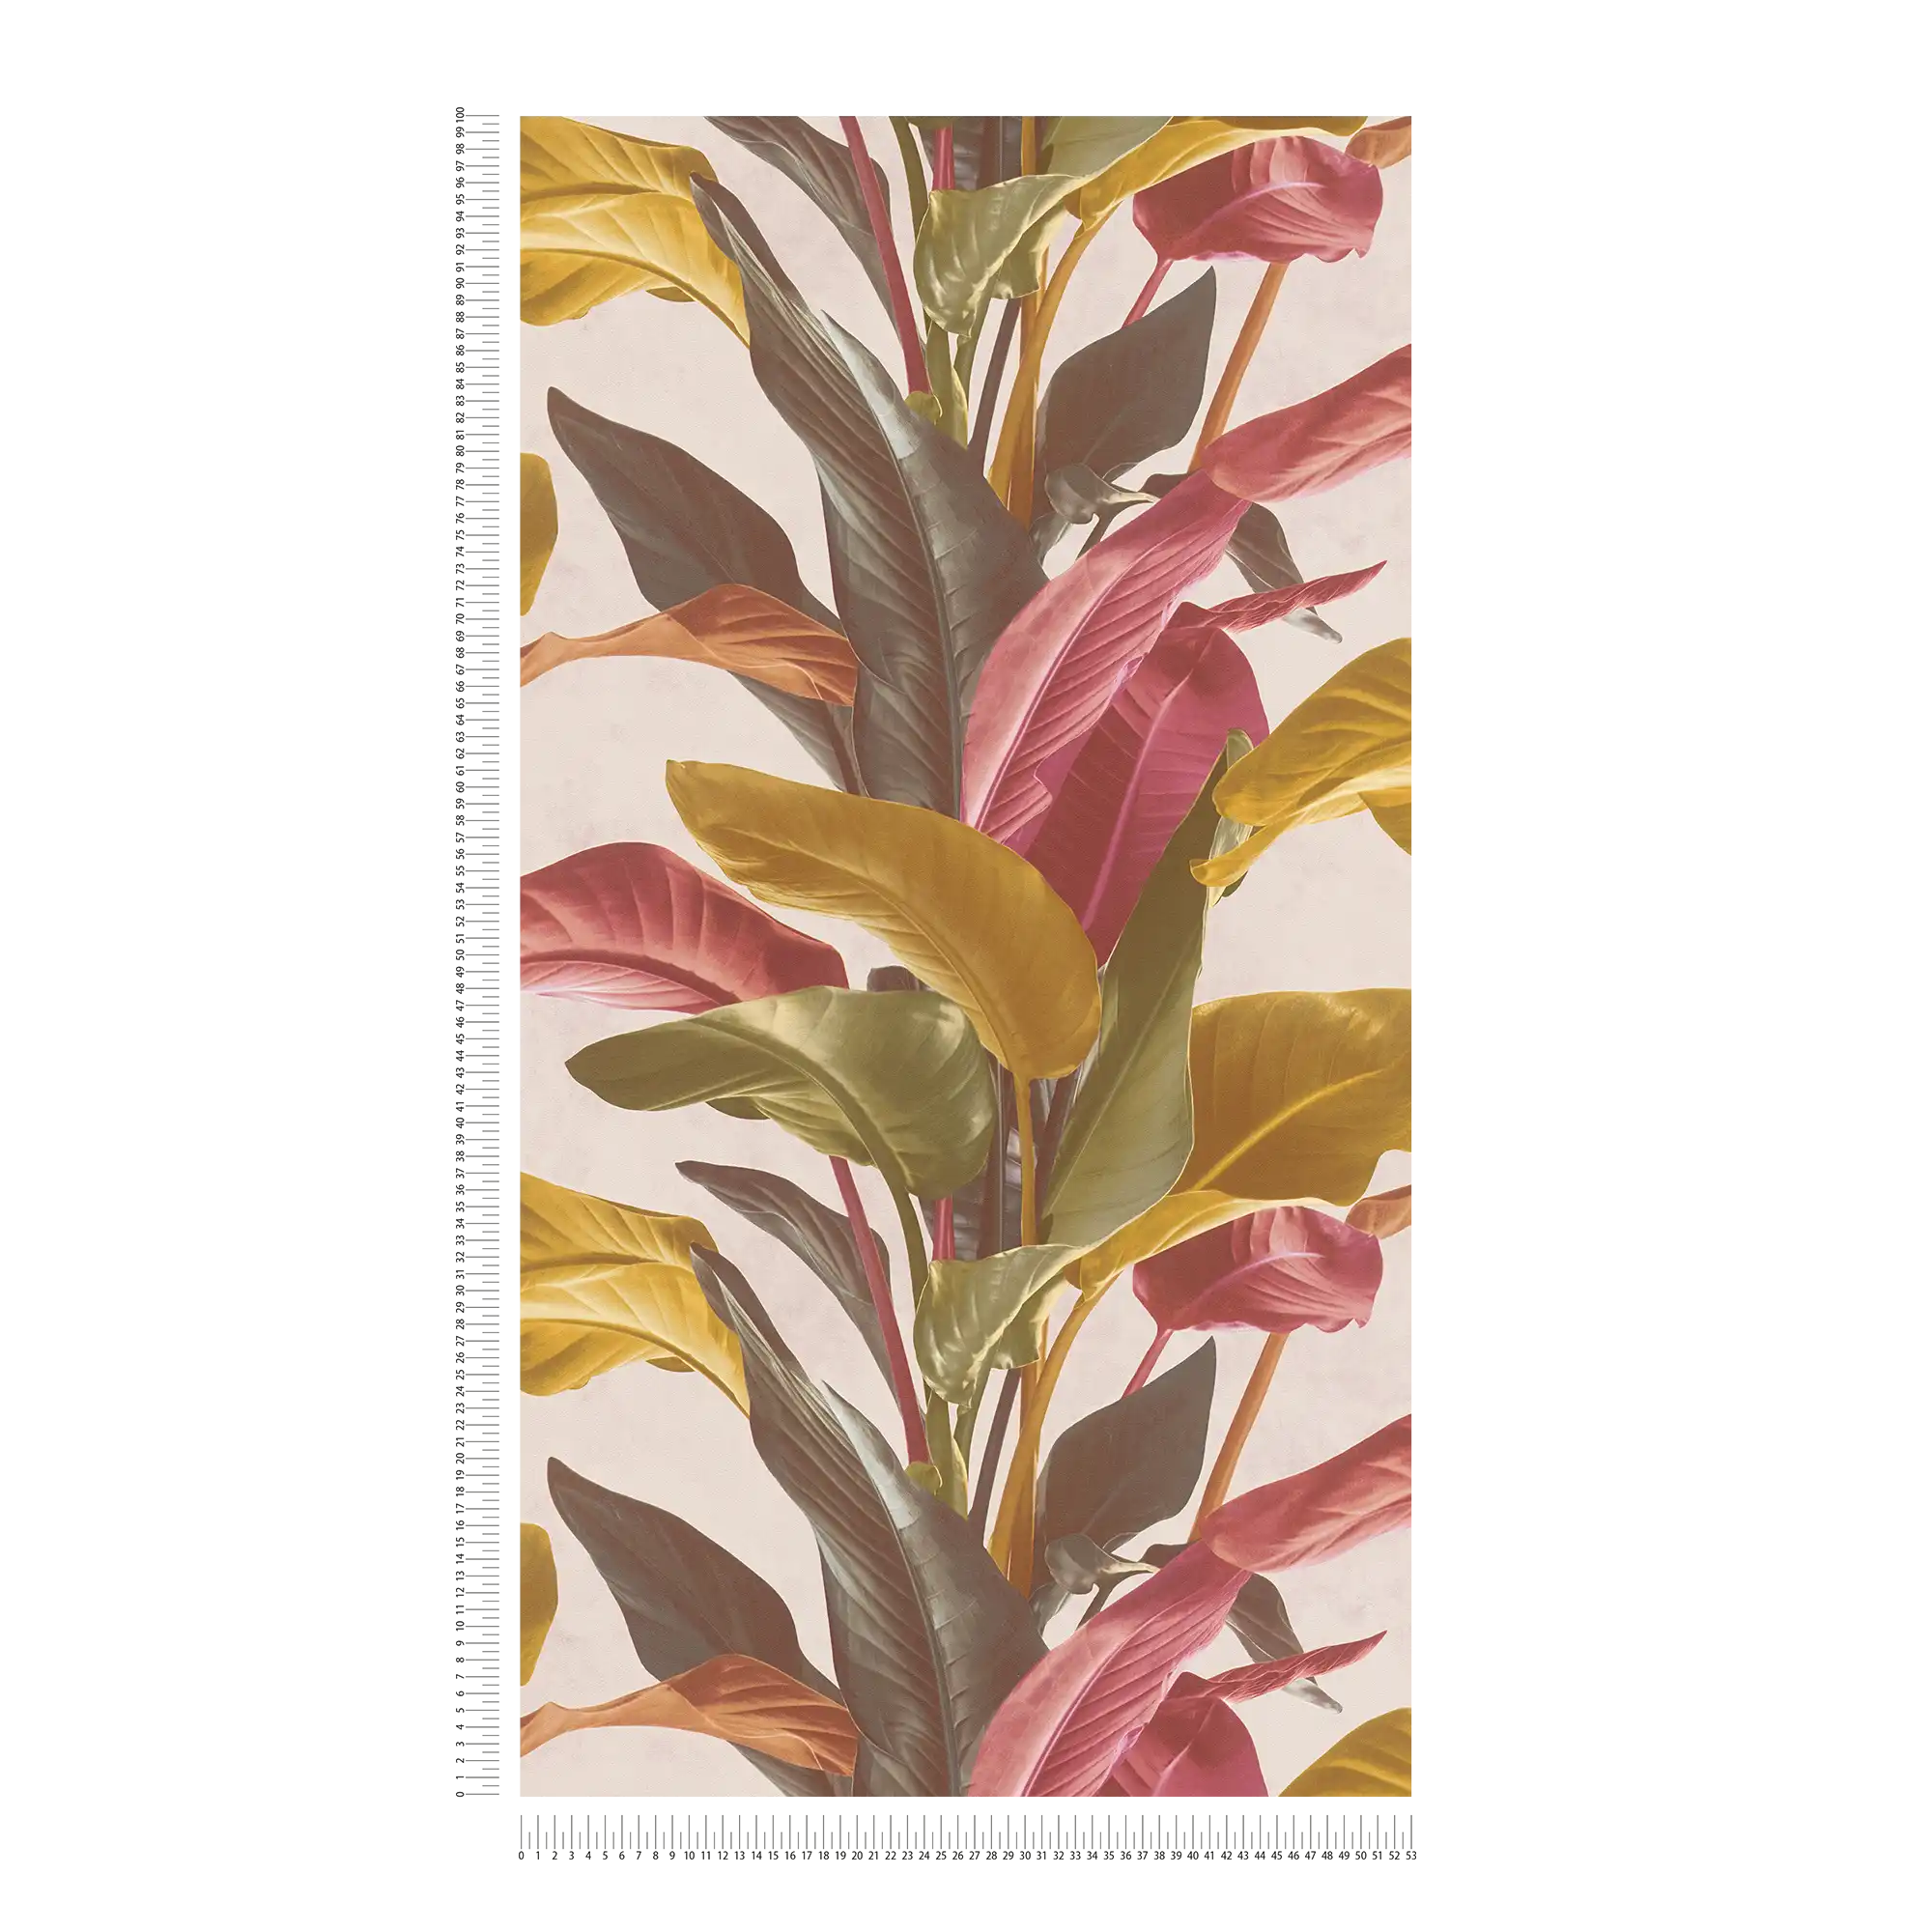             Bunte Blätter-Tapete mit seidenmattem Glanz – Braun, Orange, Rot
        